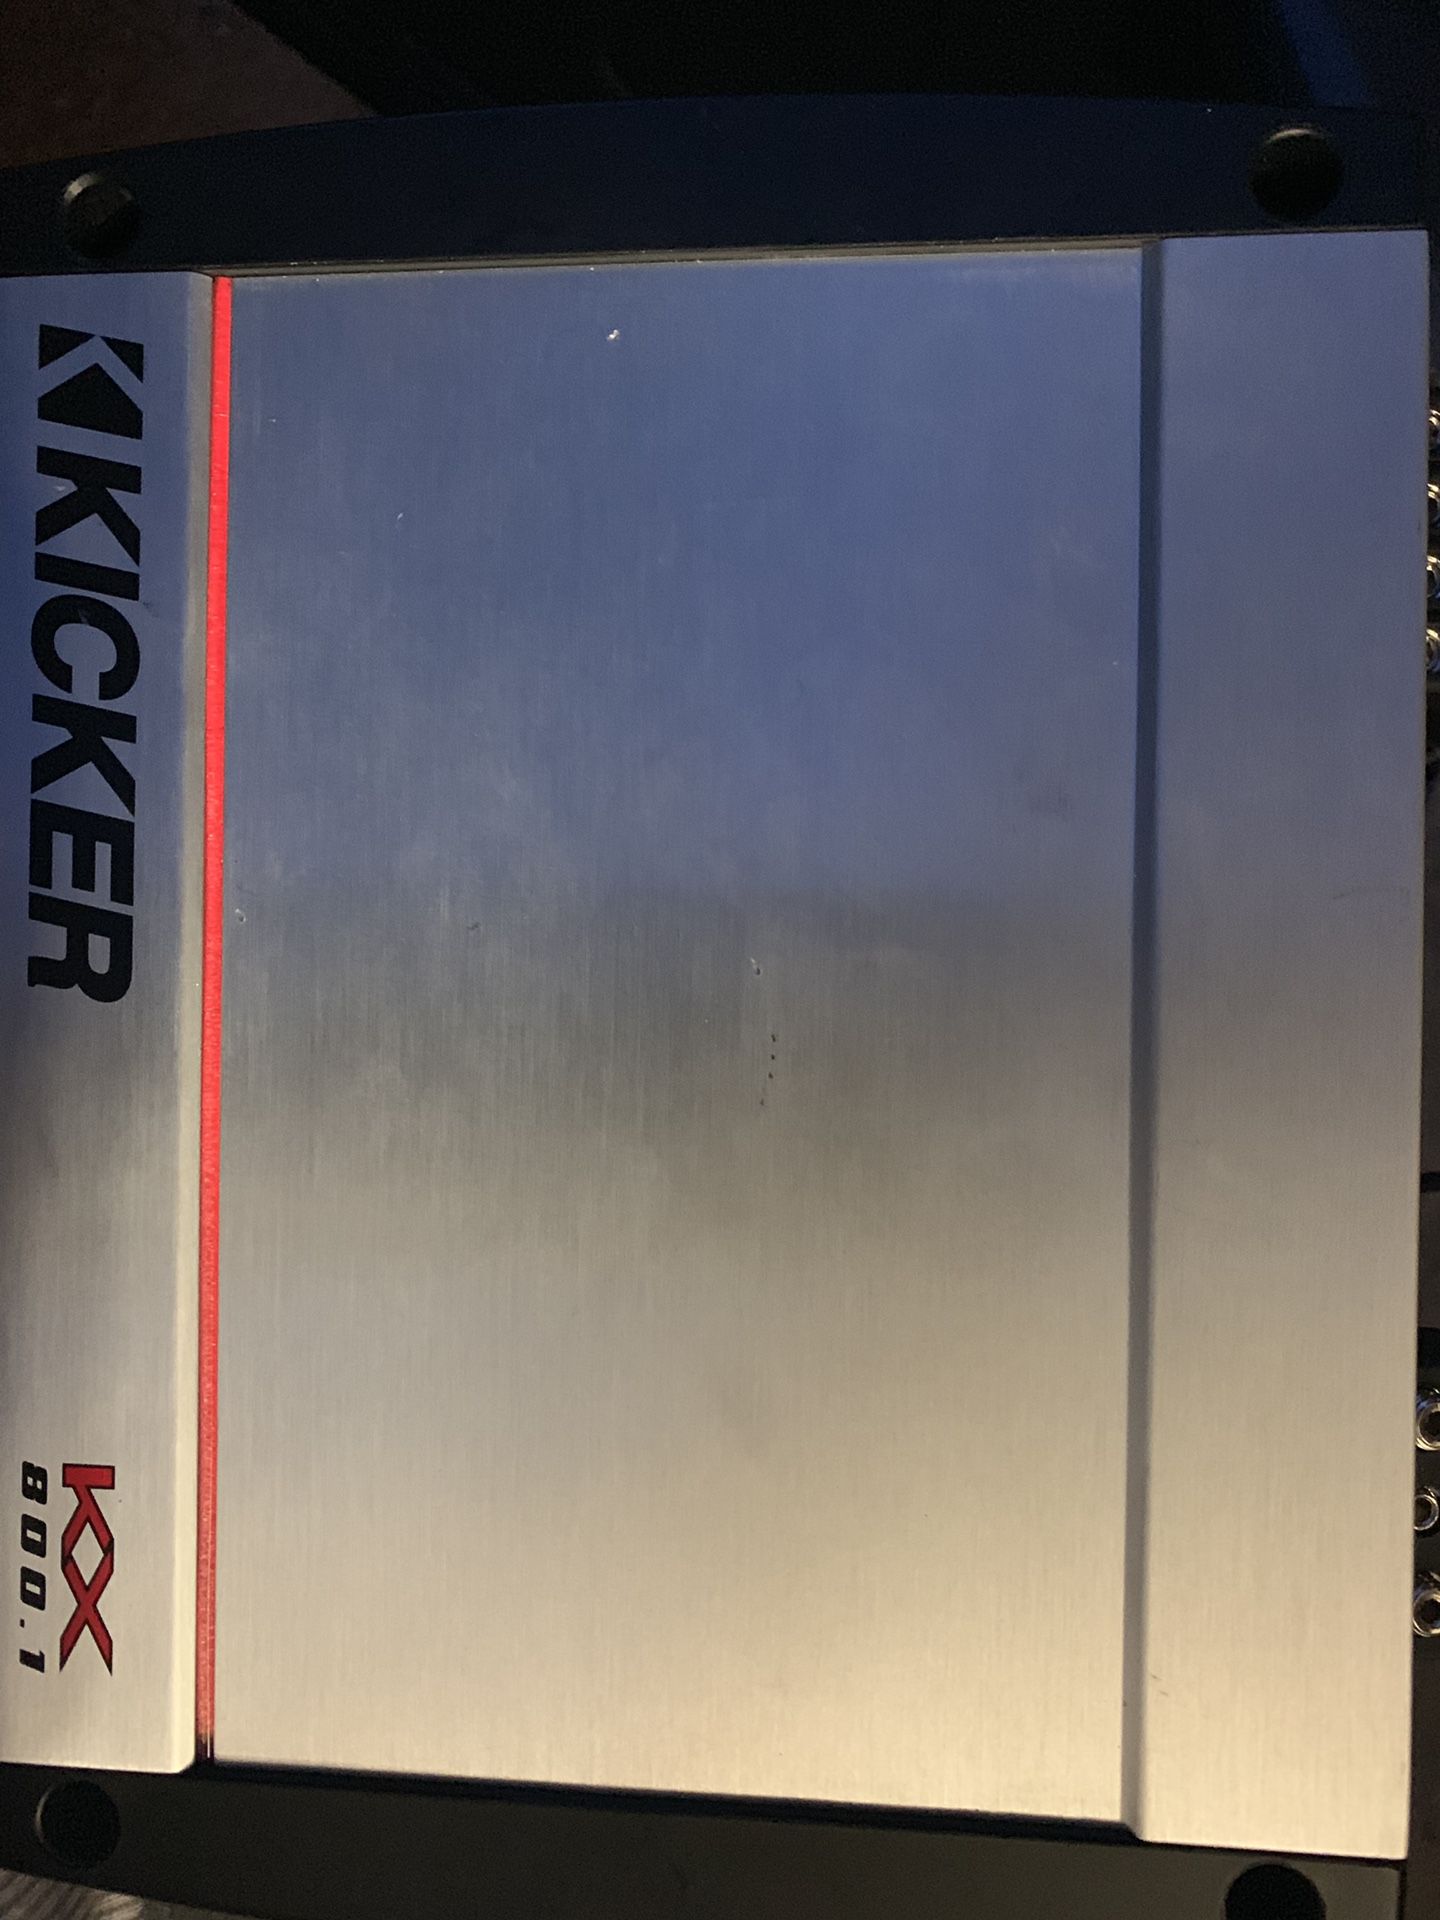 Kicker kx 800.1 mono